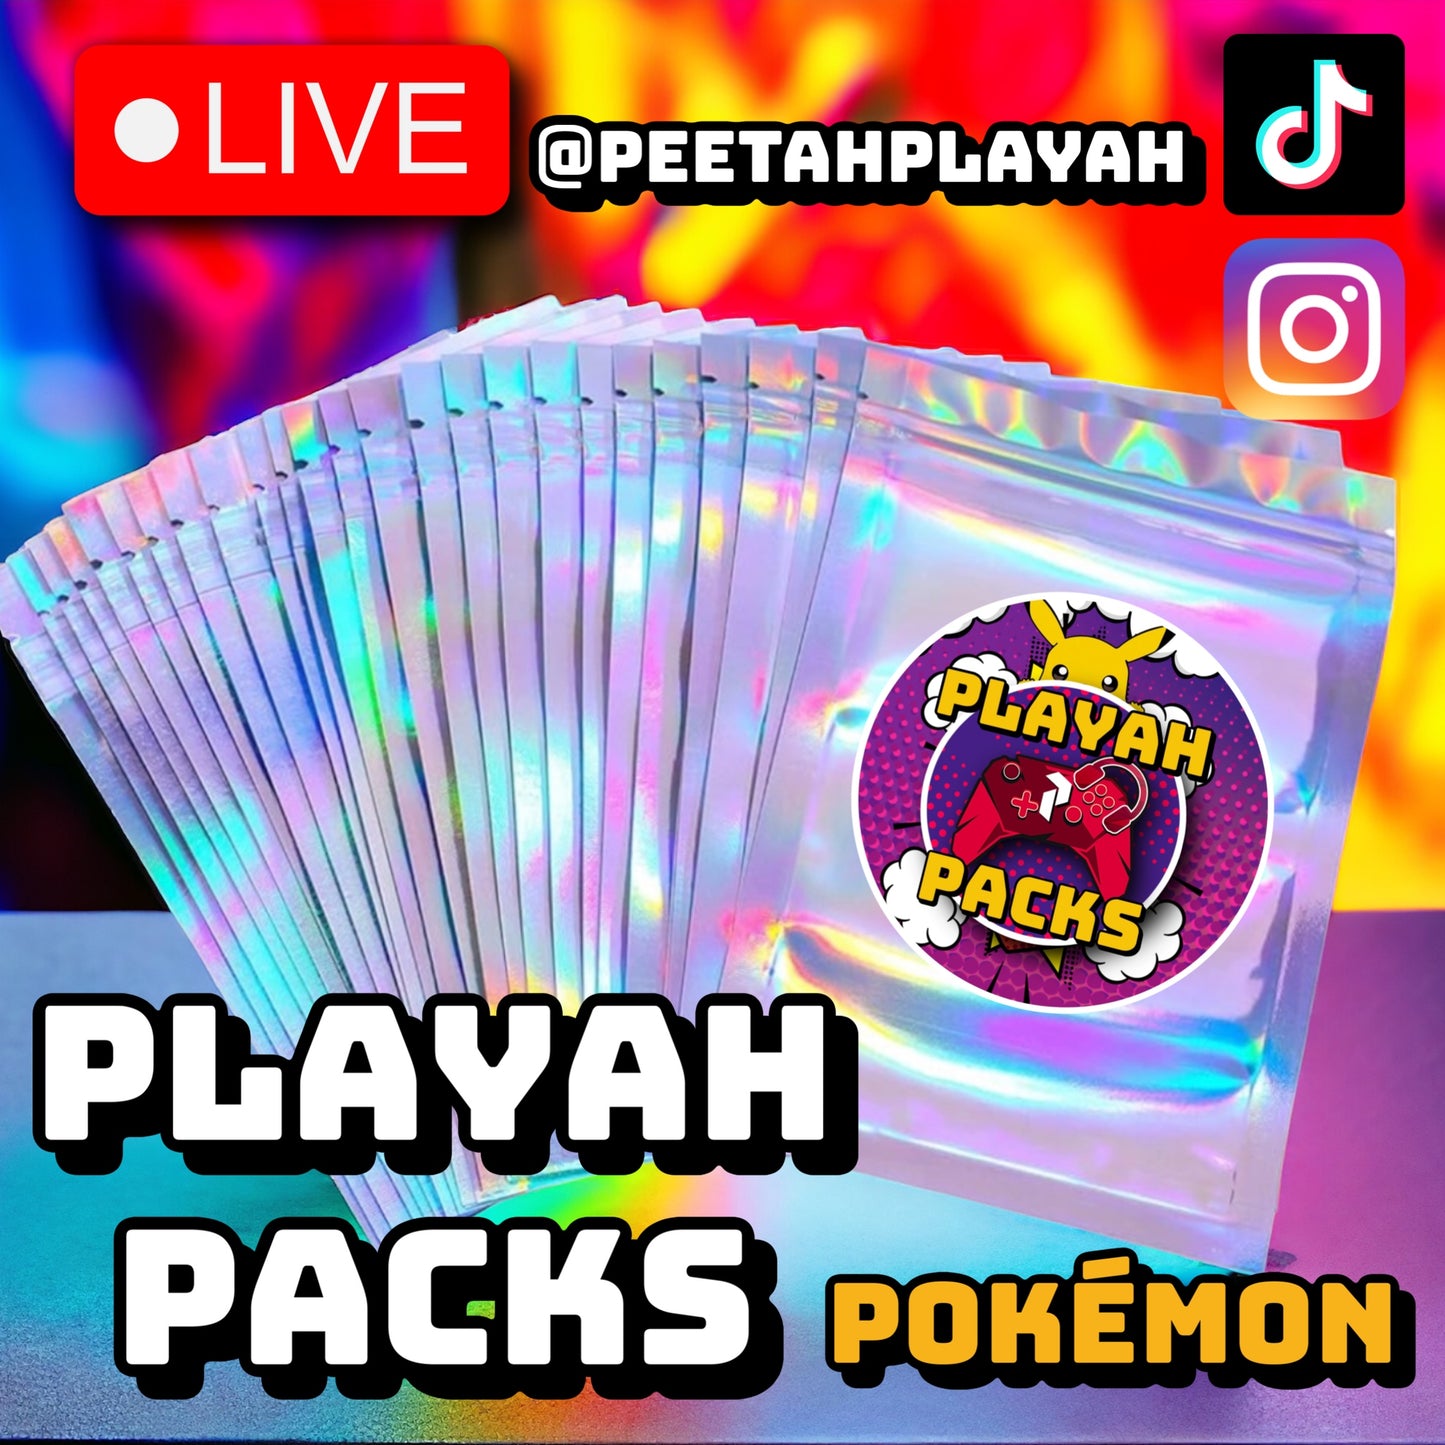 Playah Packs